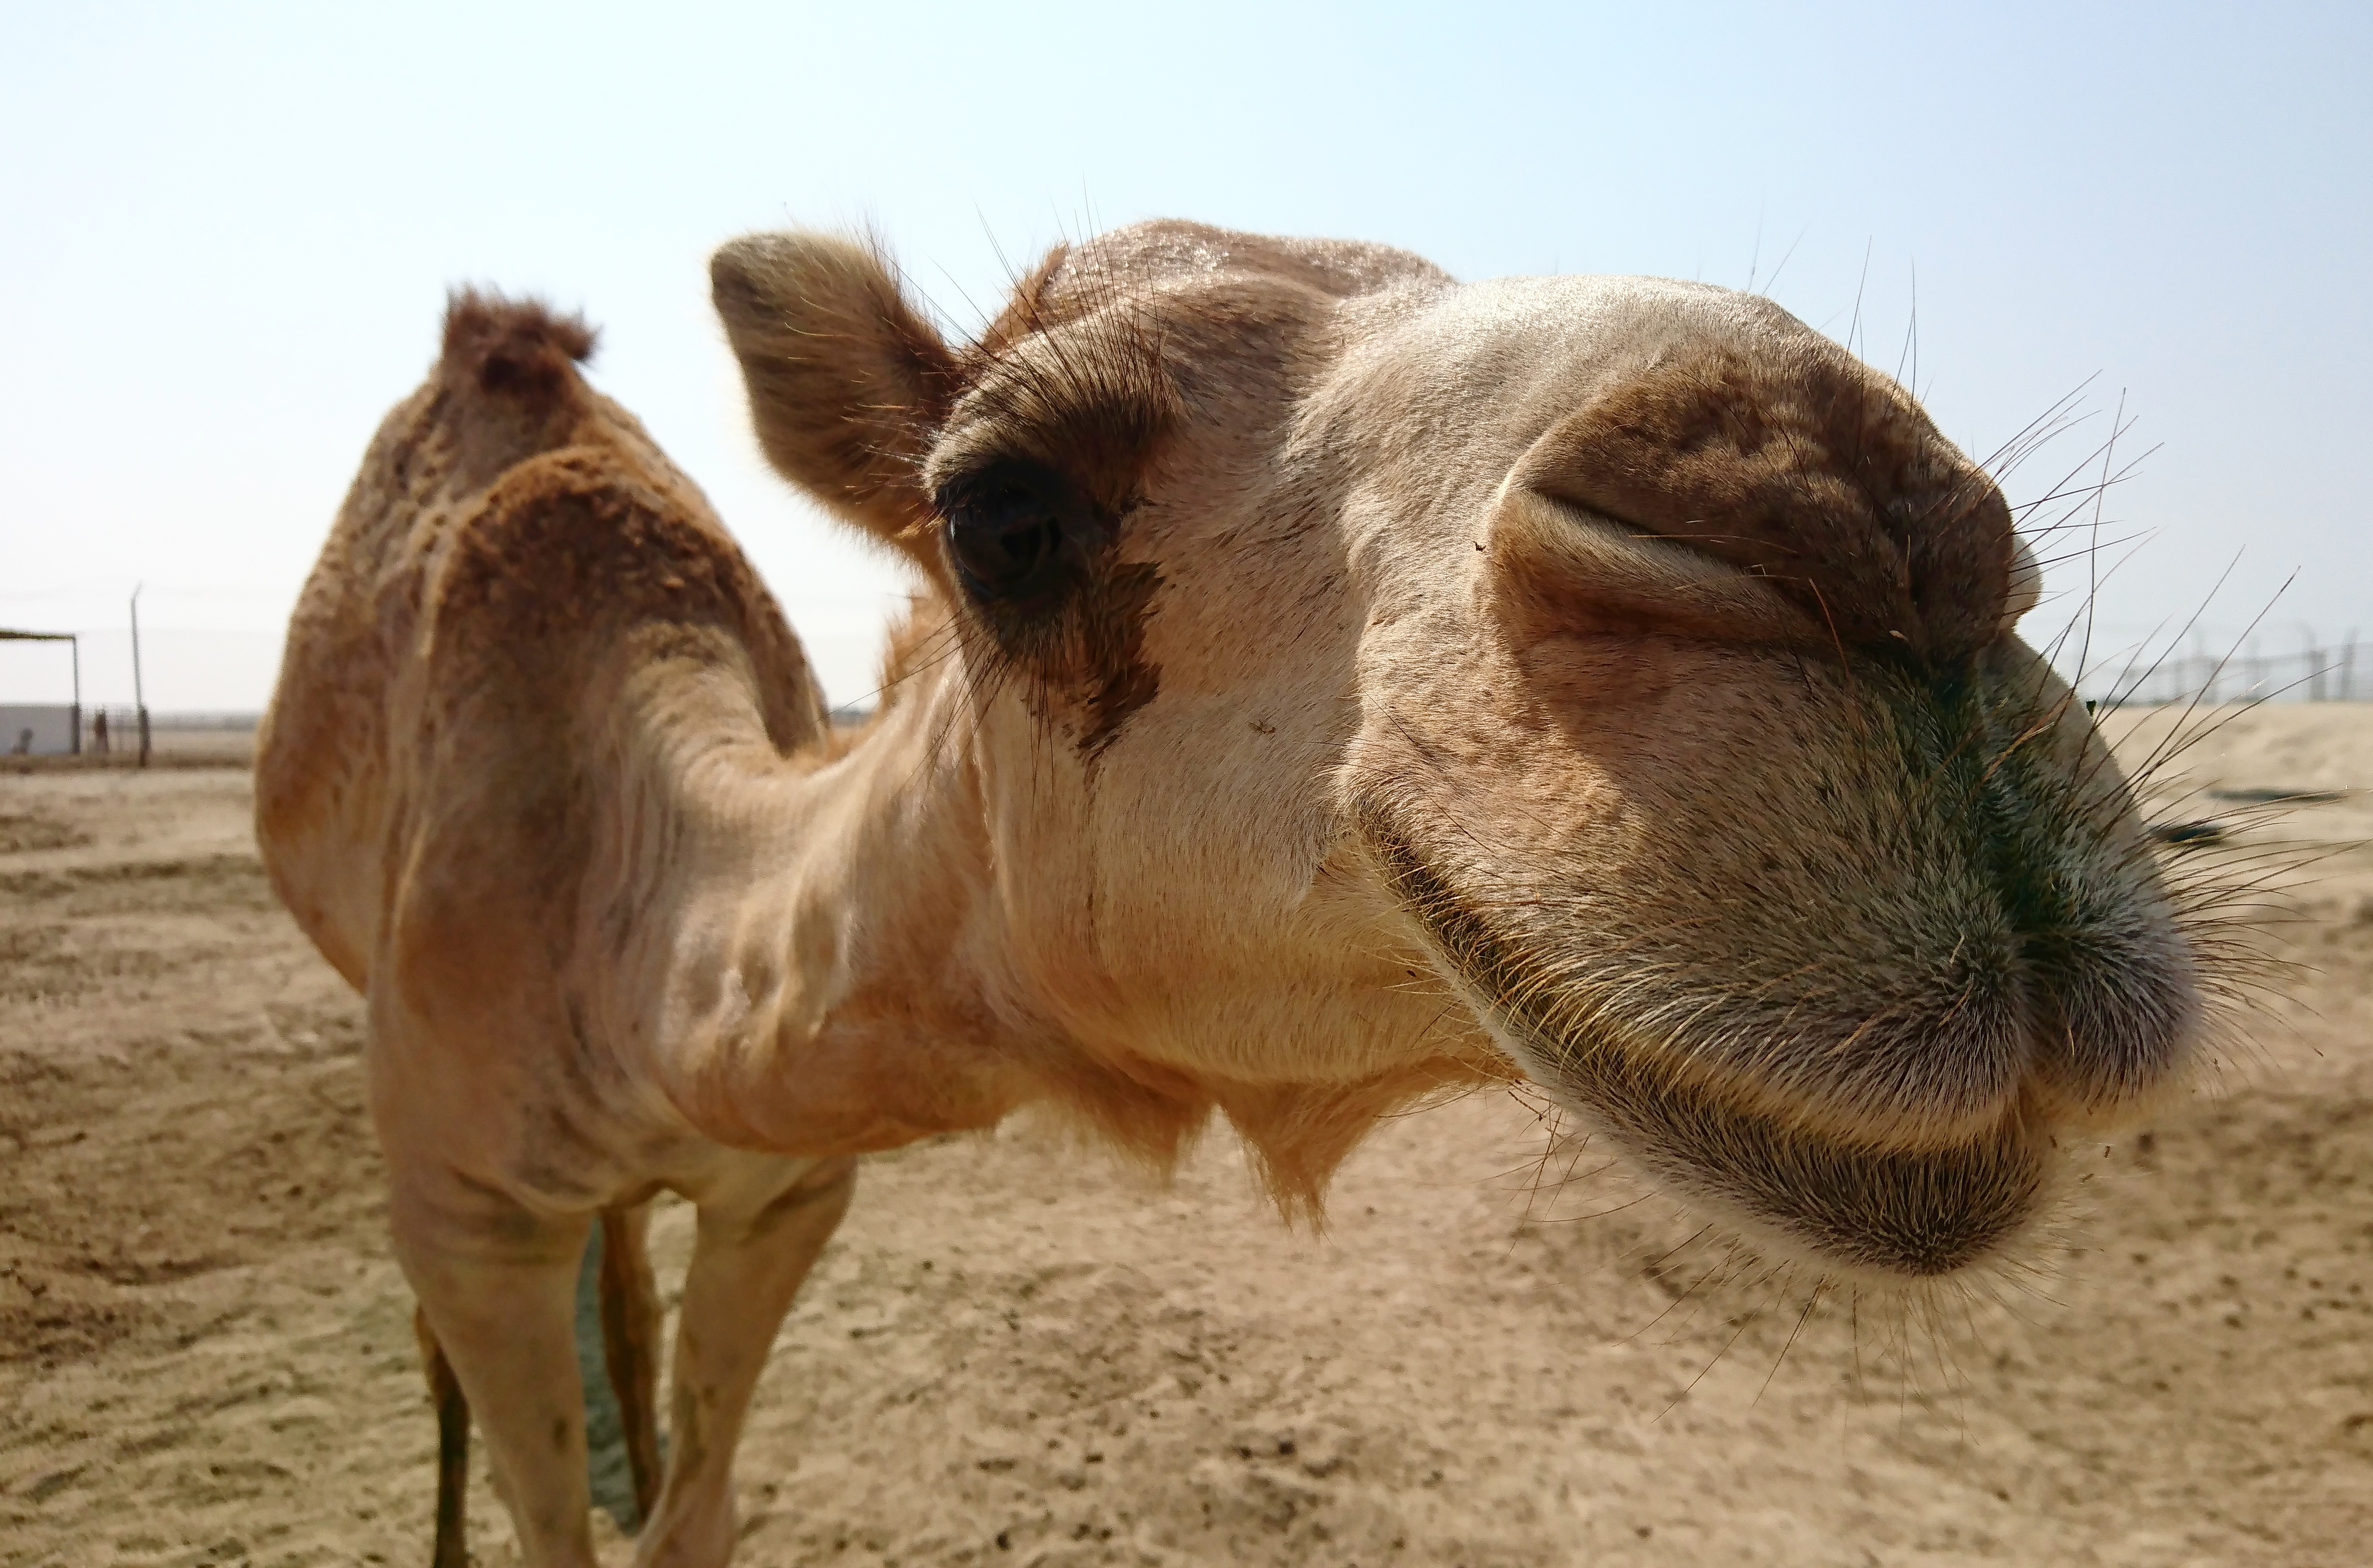 Royal Camel Farm, Bahrain